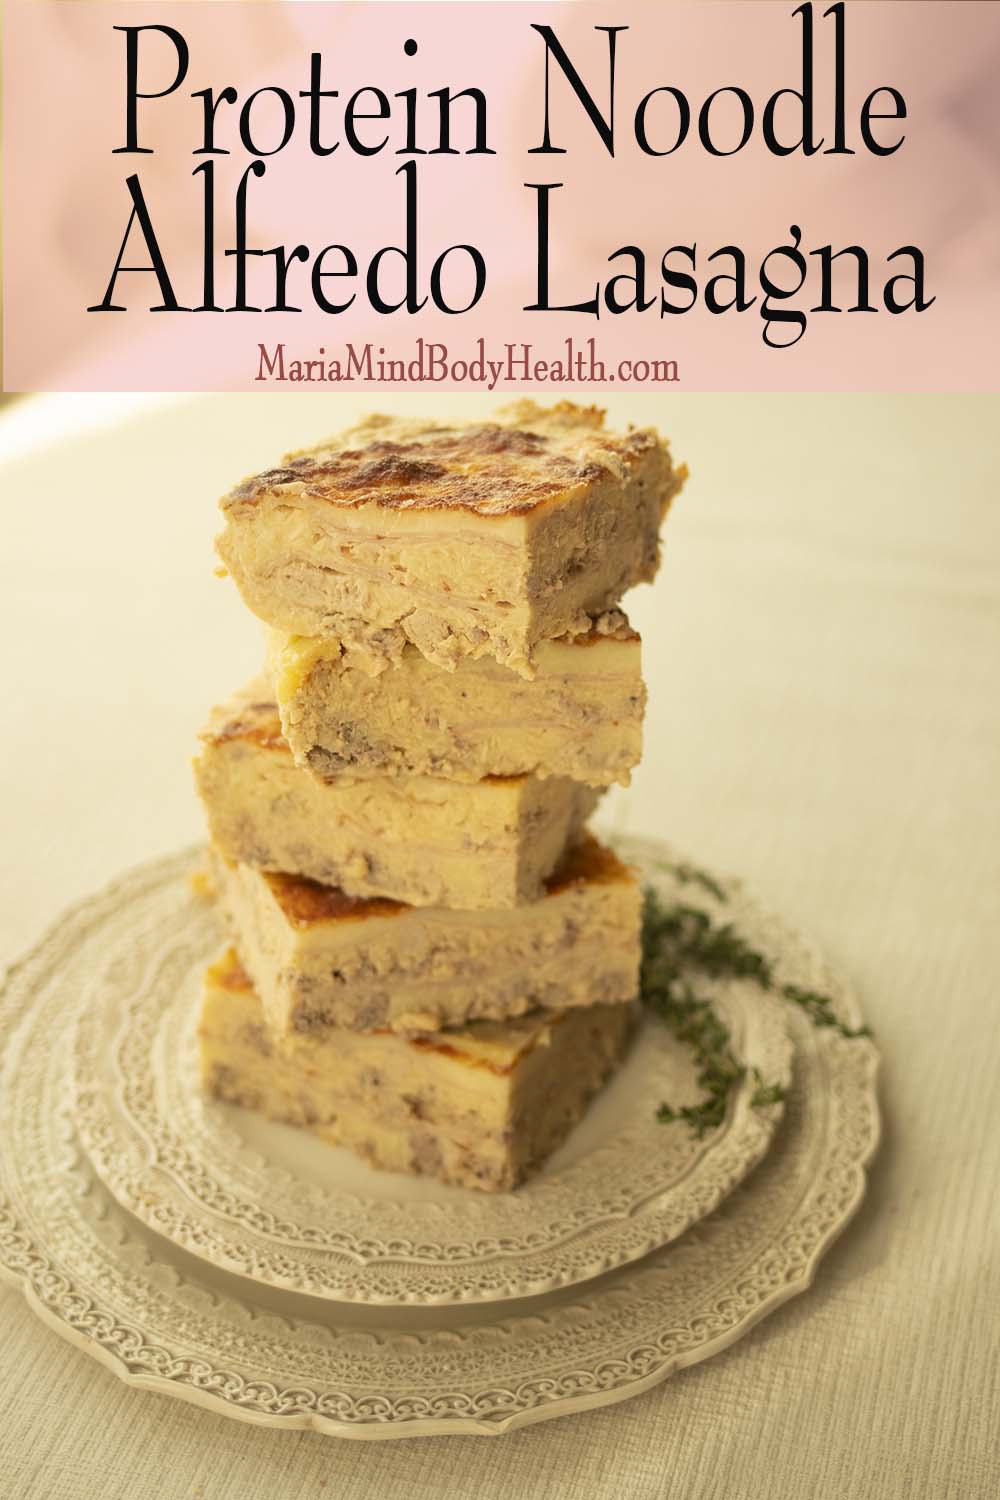 Protein Noodle Alfredo Lasagna